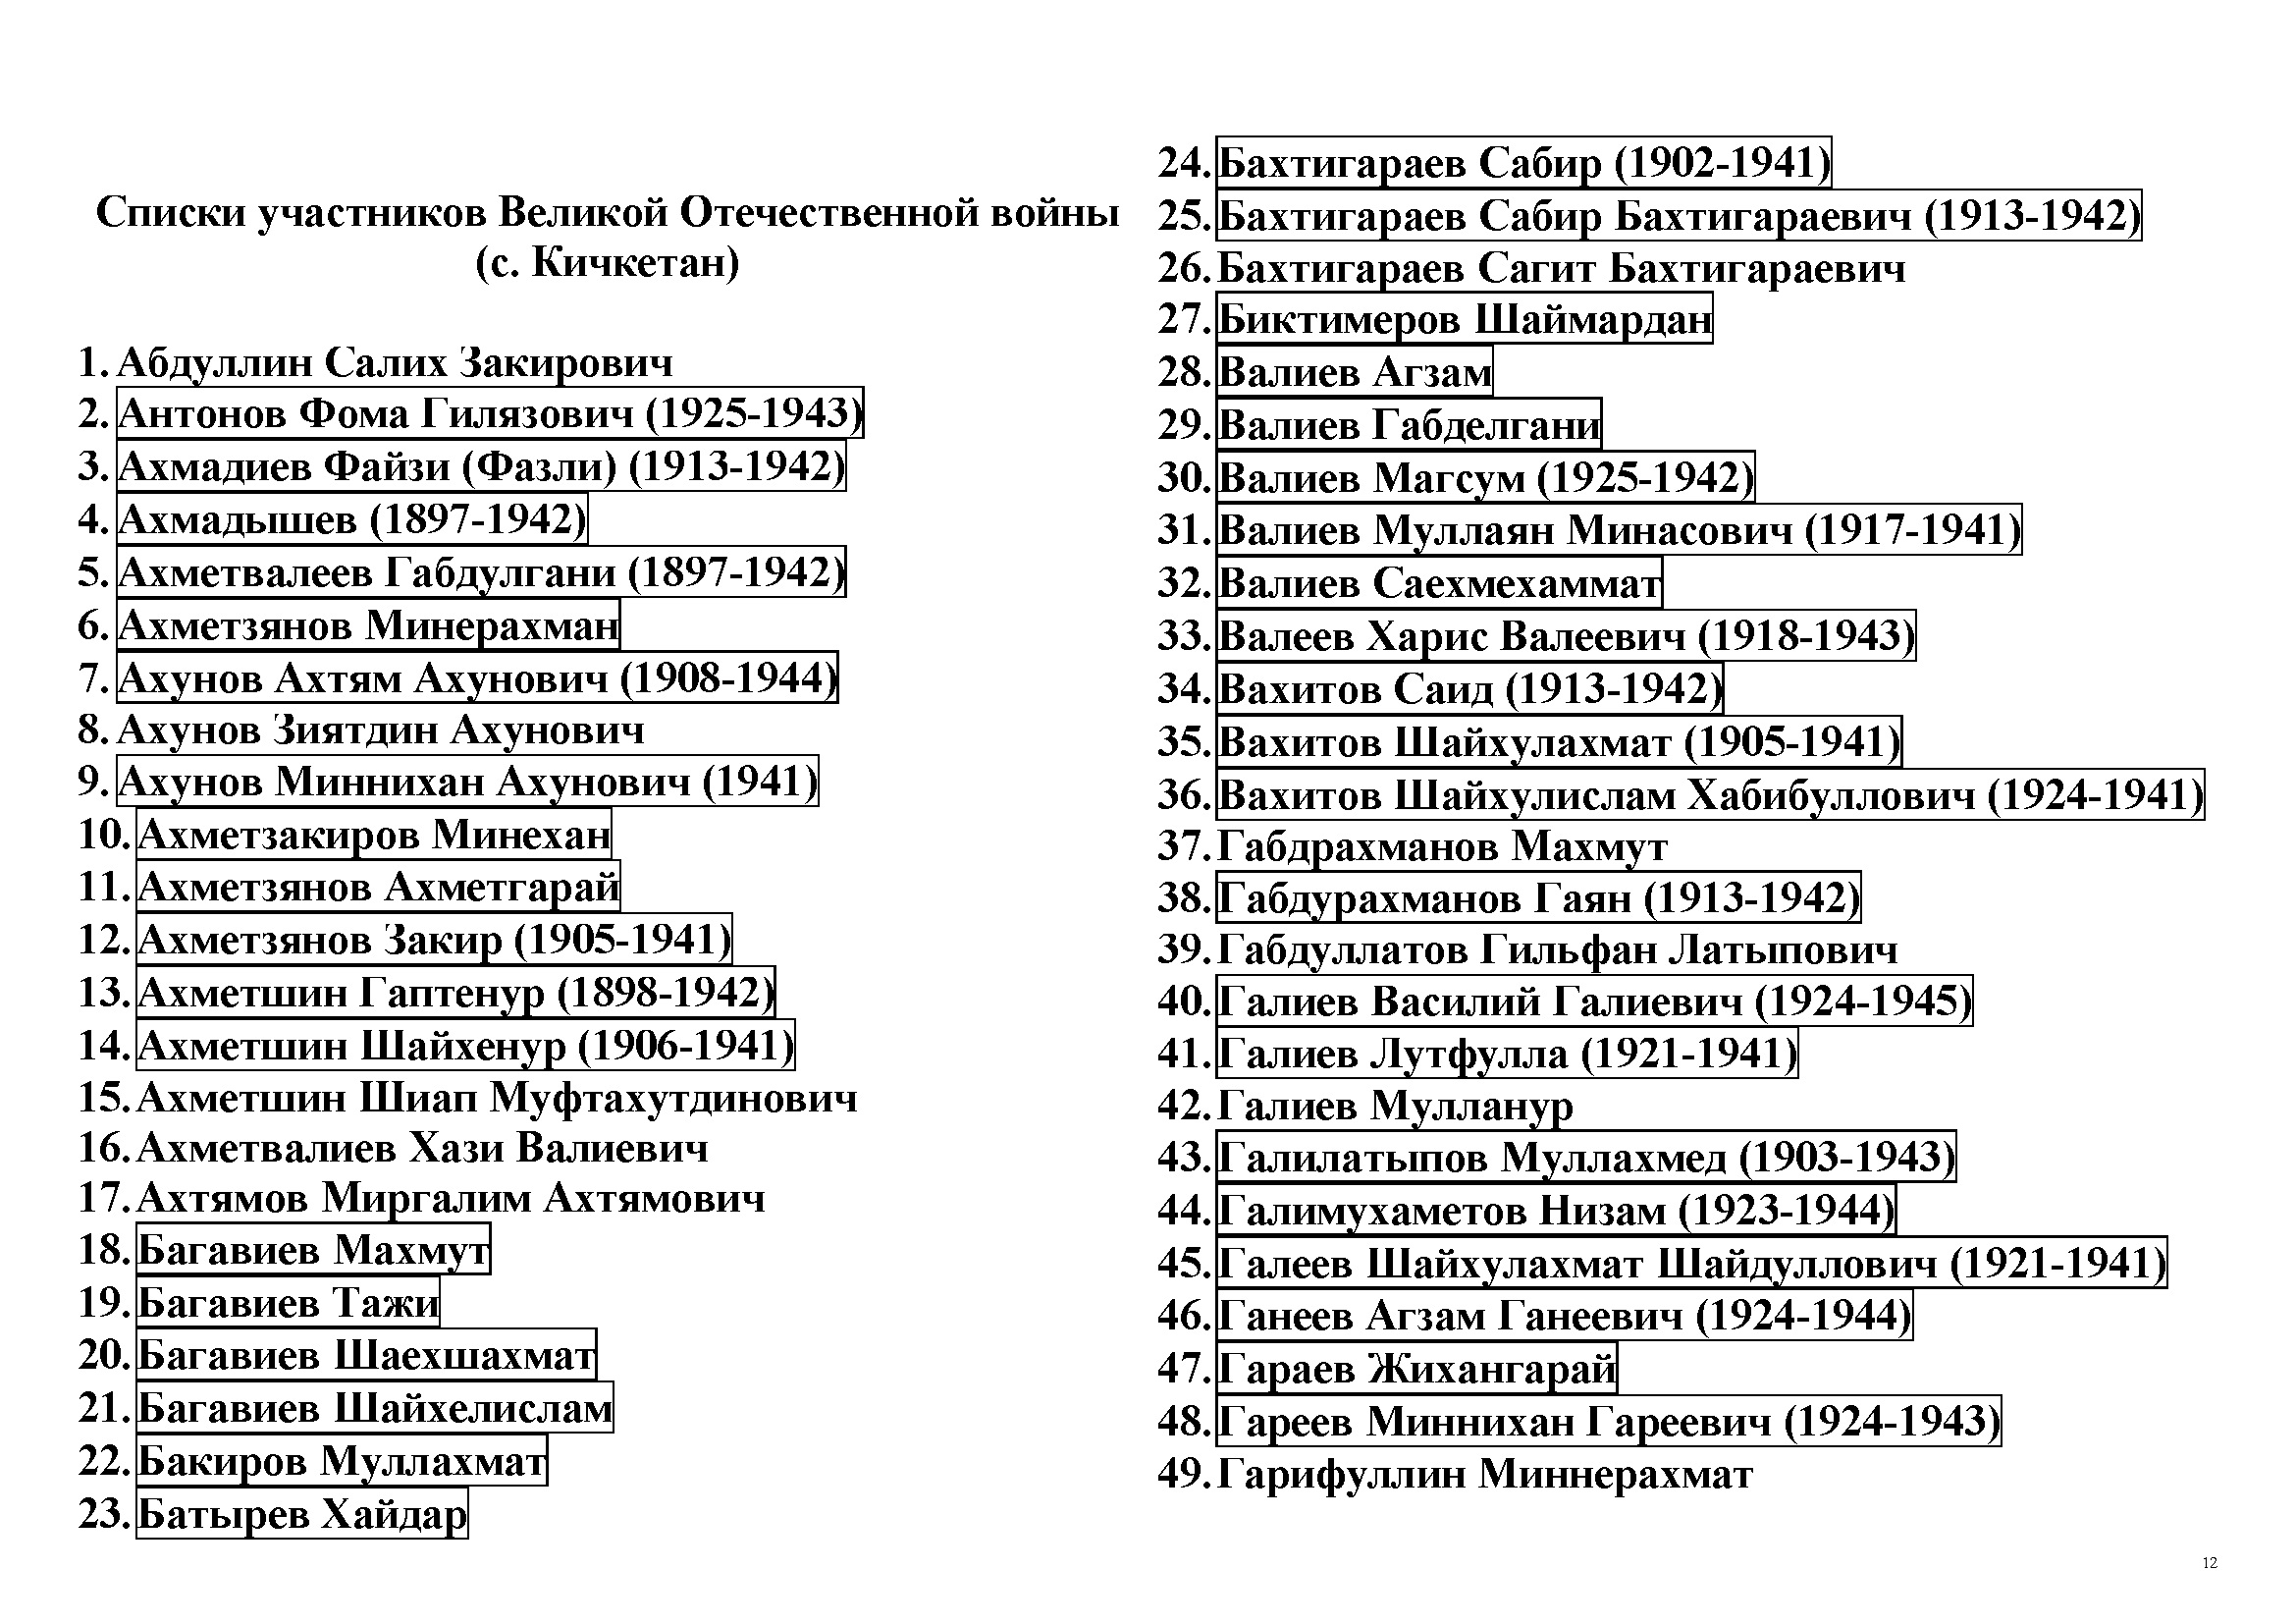 Списки пленных россиян 2024 март